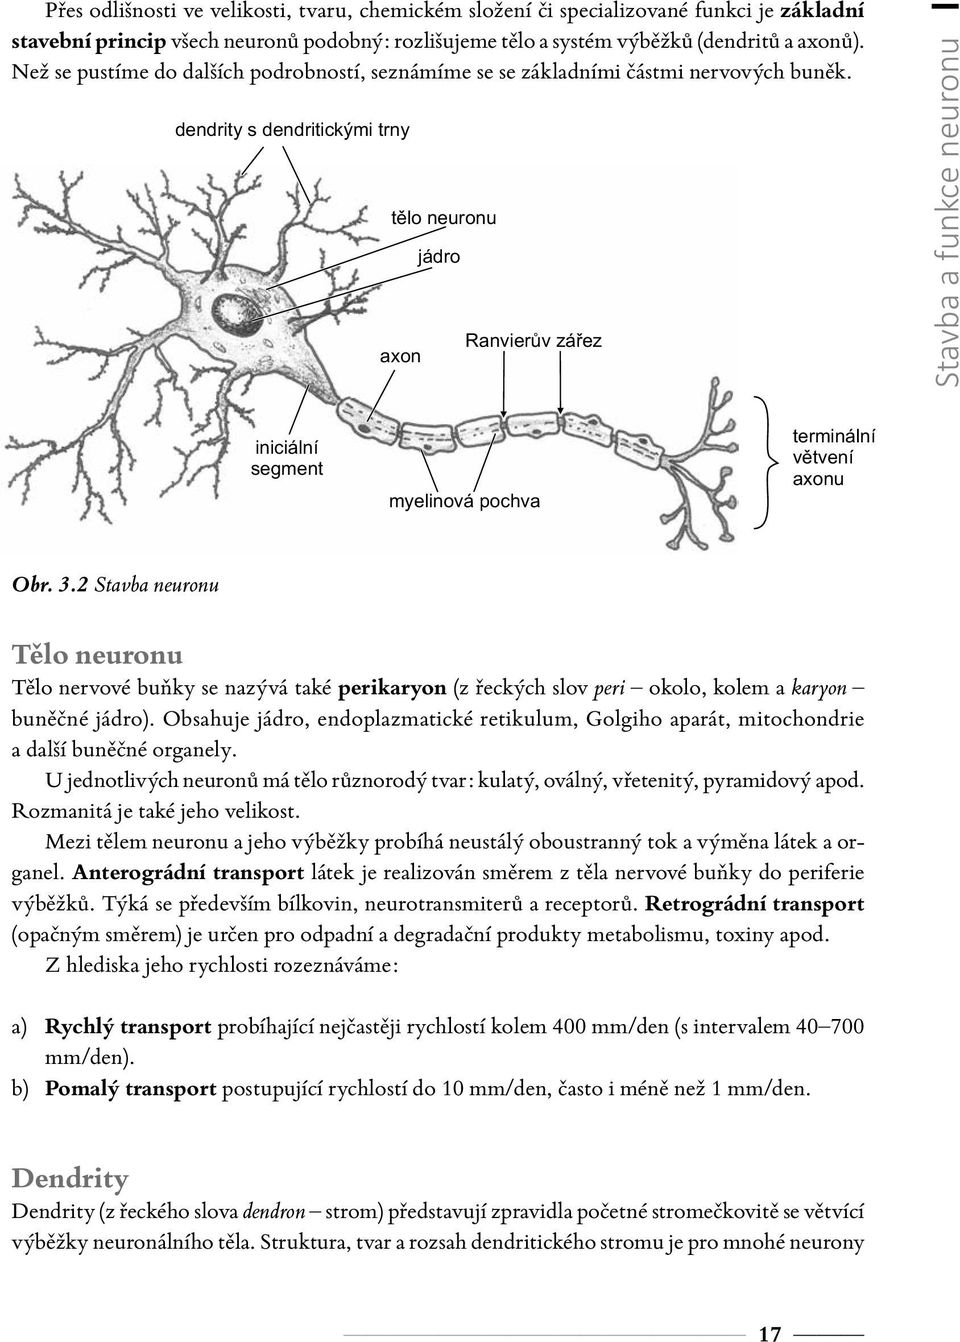 dendrity s dendritickými trny tělo neuronu axon jádro Ranvierův zářez Stavba a funkce neuronu iniciální segment myelinová pochva terminální větvení axonu Obr. 3.